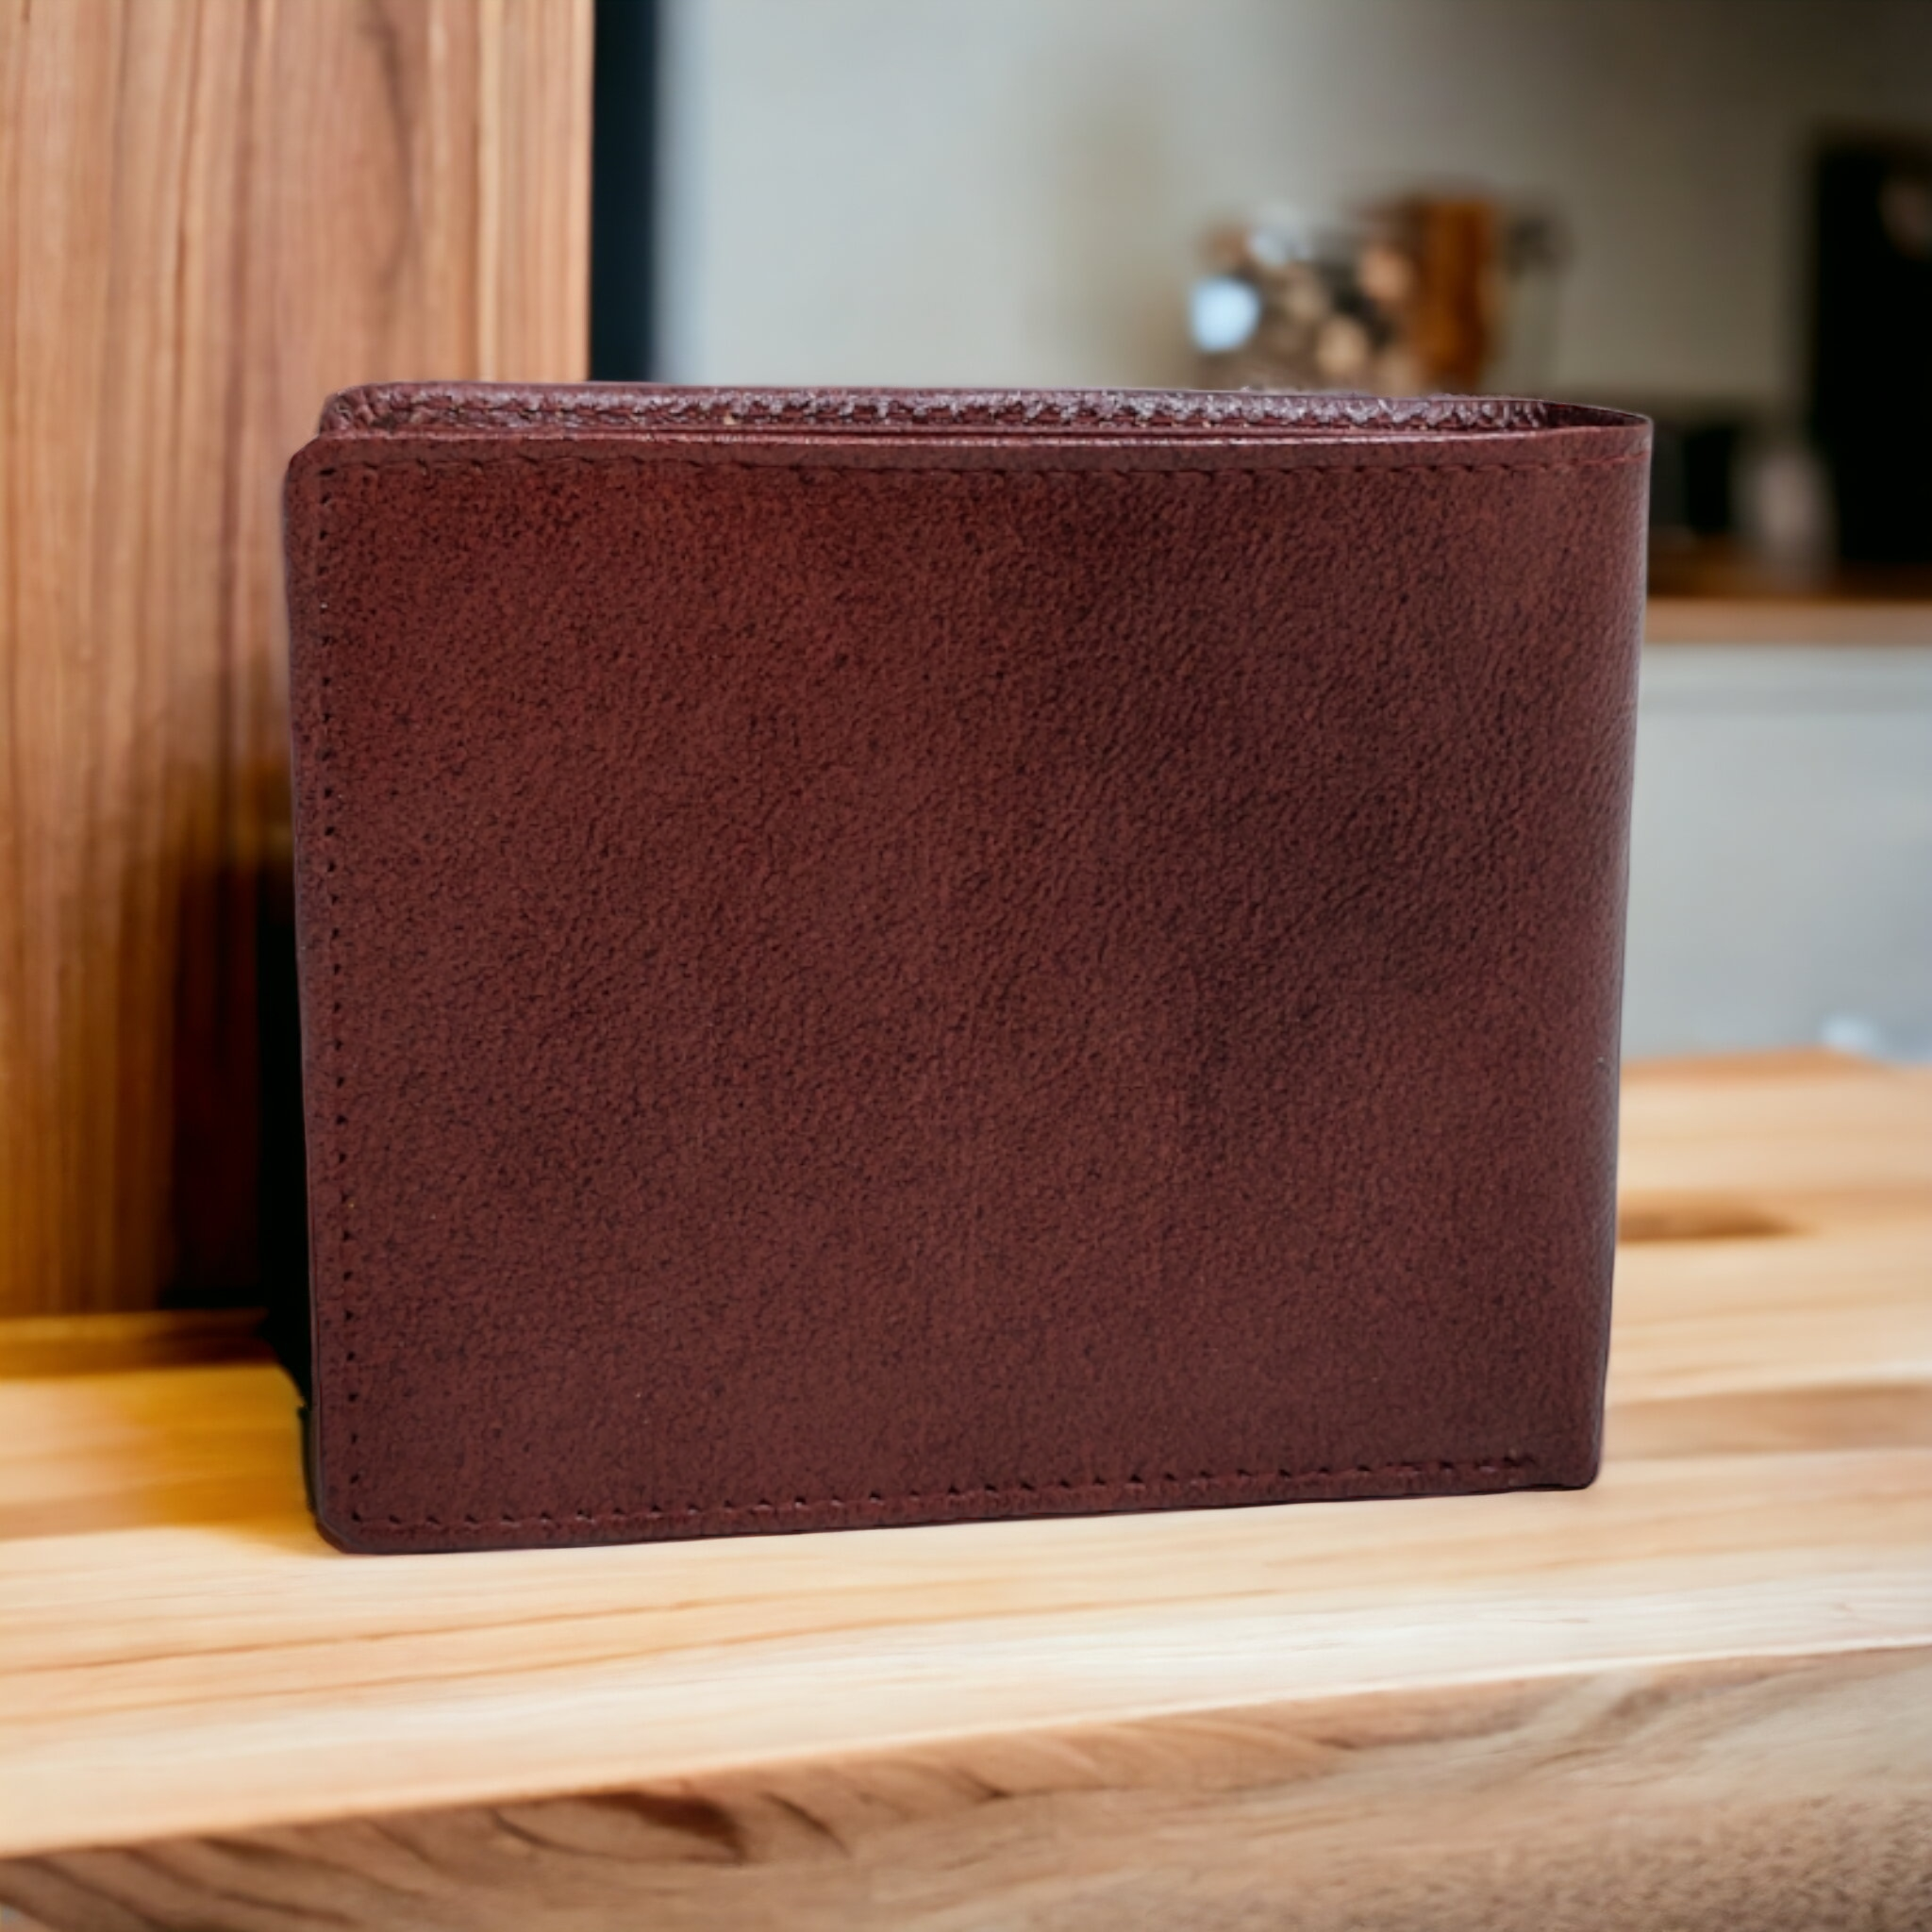 Calvin Klein Men's RFID Genuine Leather Wallet with Coin Pocket | eBay